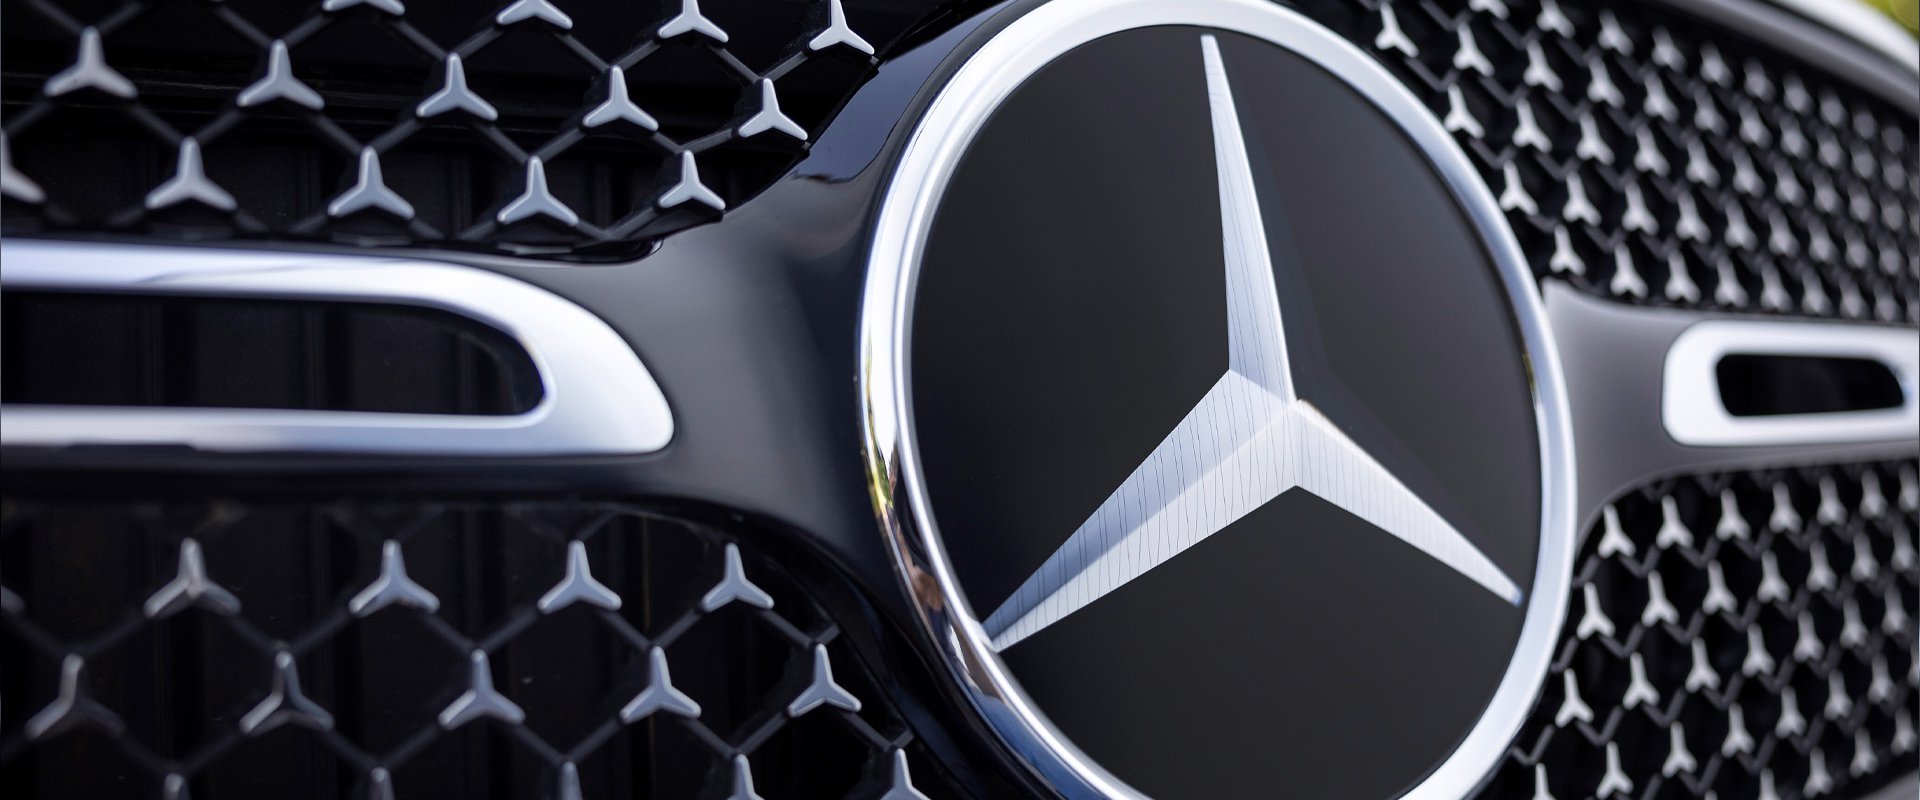 Klasy Mercedesa - czym się różnią i jak rozszyfrować oznaczenia?